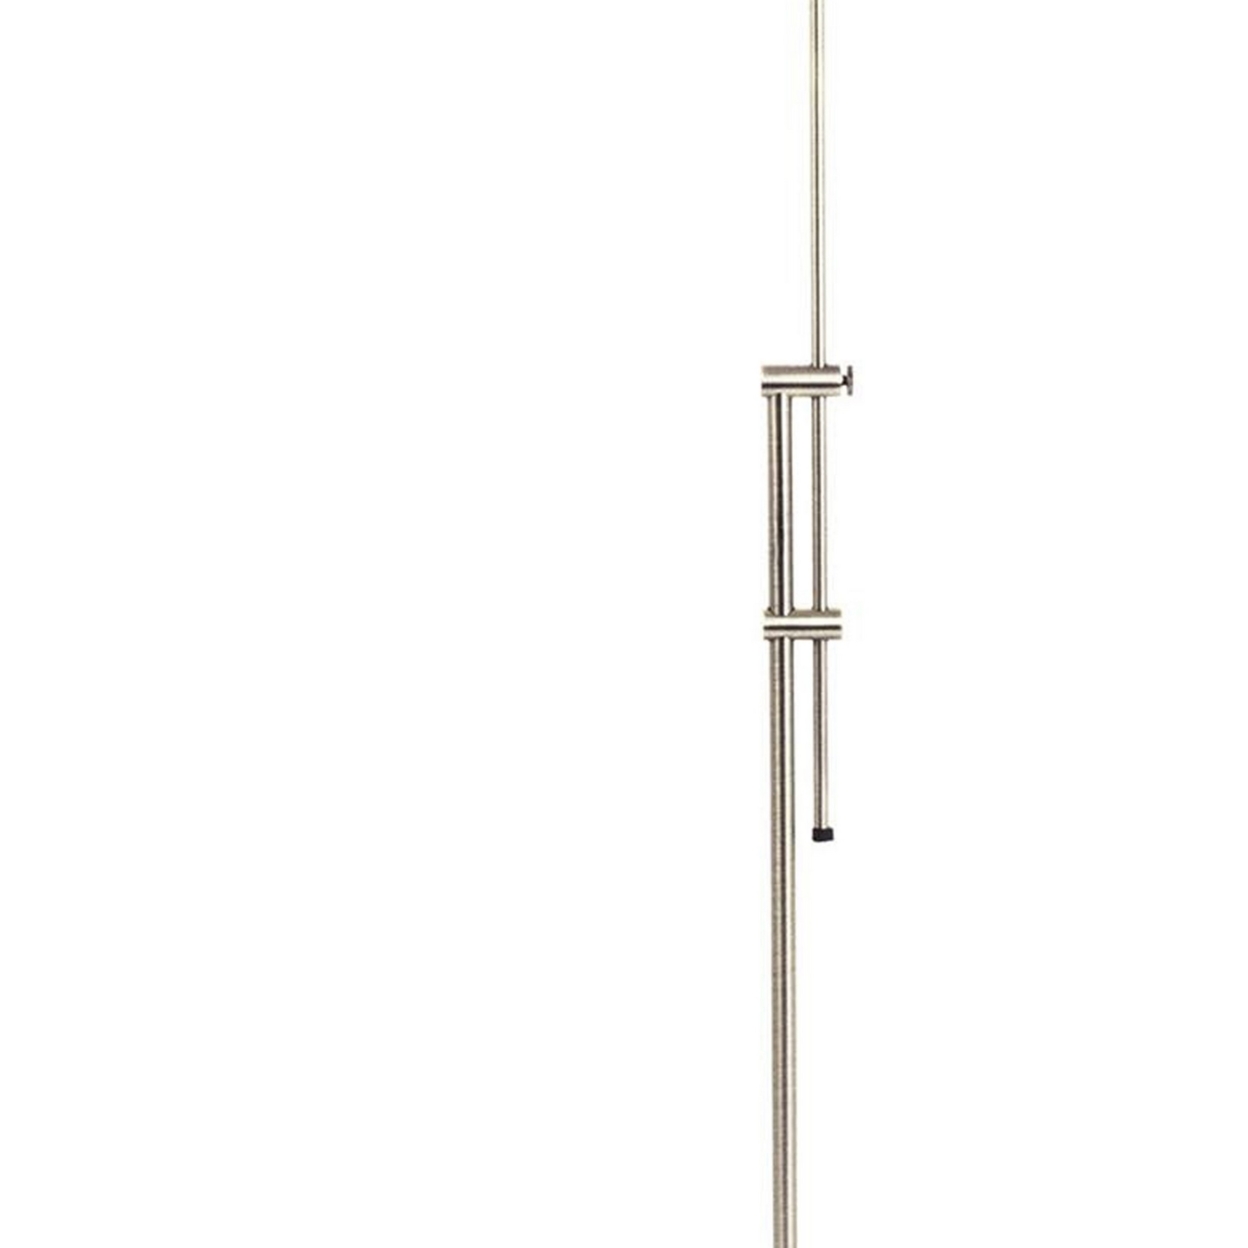 3 Way Metal Floor Lamp With And Adjustable Height Mechanism, Silver- Saltoro Sherpi